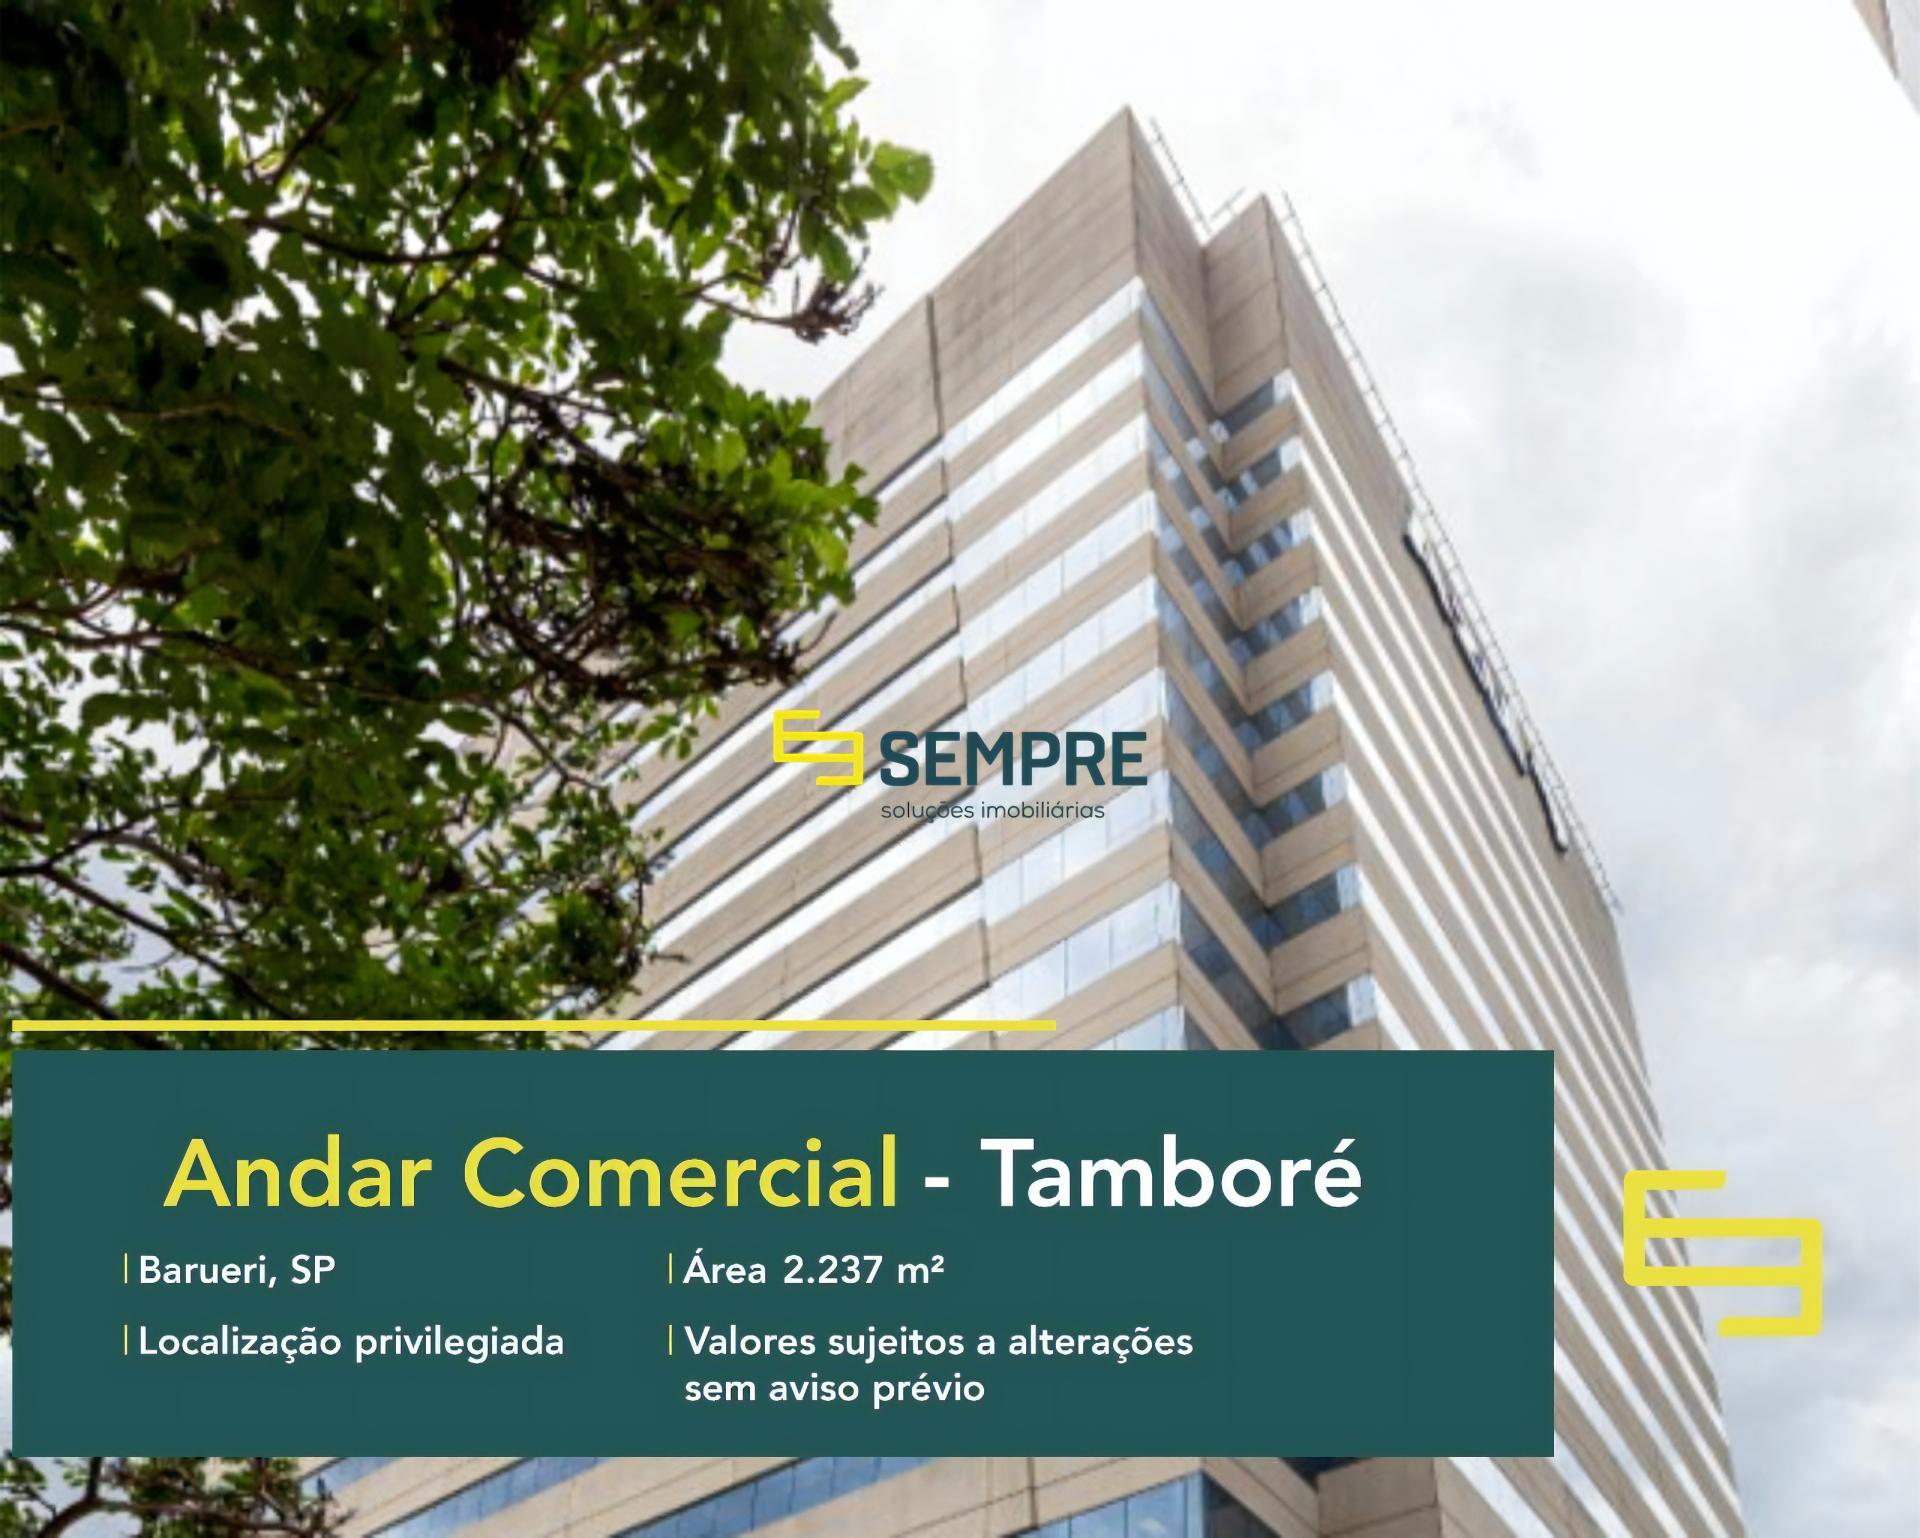 Aluguel de laje corporativa em Barueri - São Paulo, excelente localização. O estabelecimento comercial conta com área de 2.237 m².